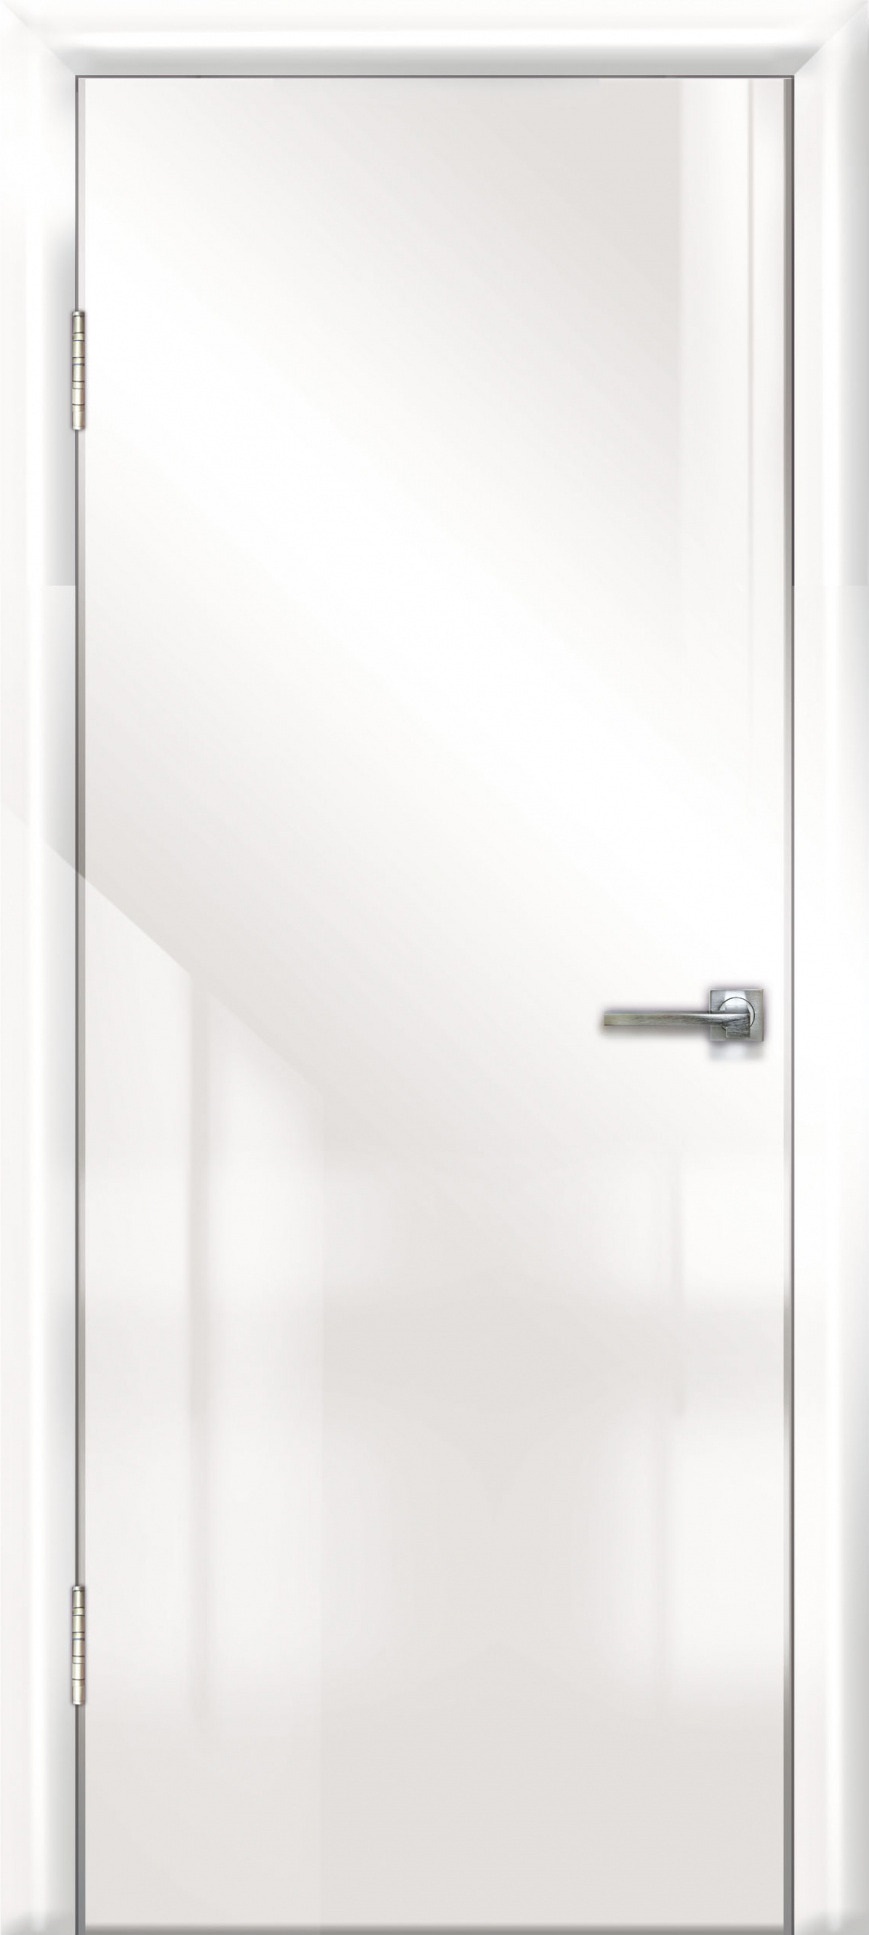 фото Дверь межкомнатная дверная линия дг-500 600х2000 мм белый глянец/белая 21-07 пвх